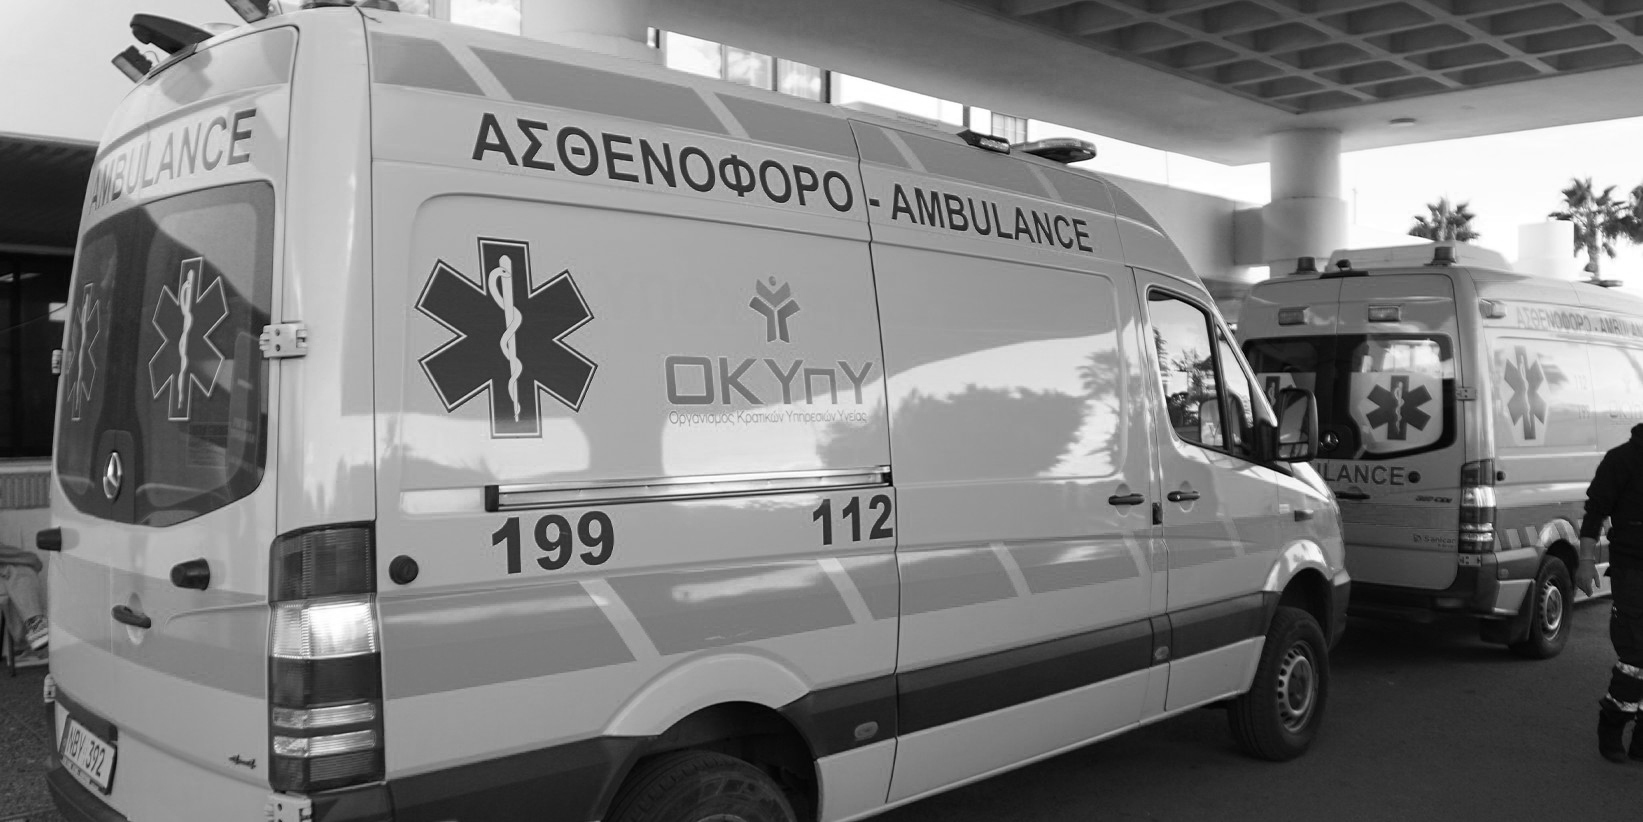 Νέα τραγωδία: Υπέκυψε στα τραύματα του ο 79χρονος Μιχαλάκης Γεωργίου που παρασύρθηκε από οδηγό ενώ διασταύρωνε